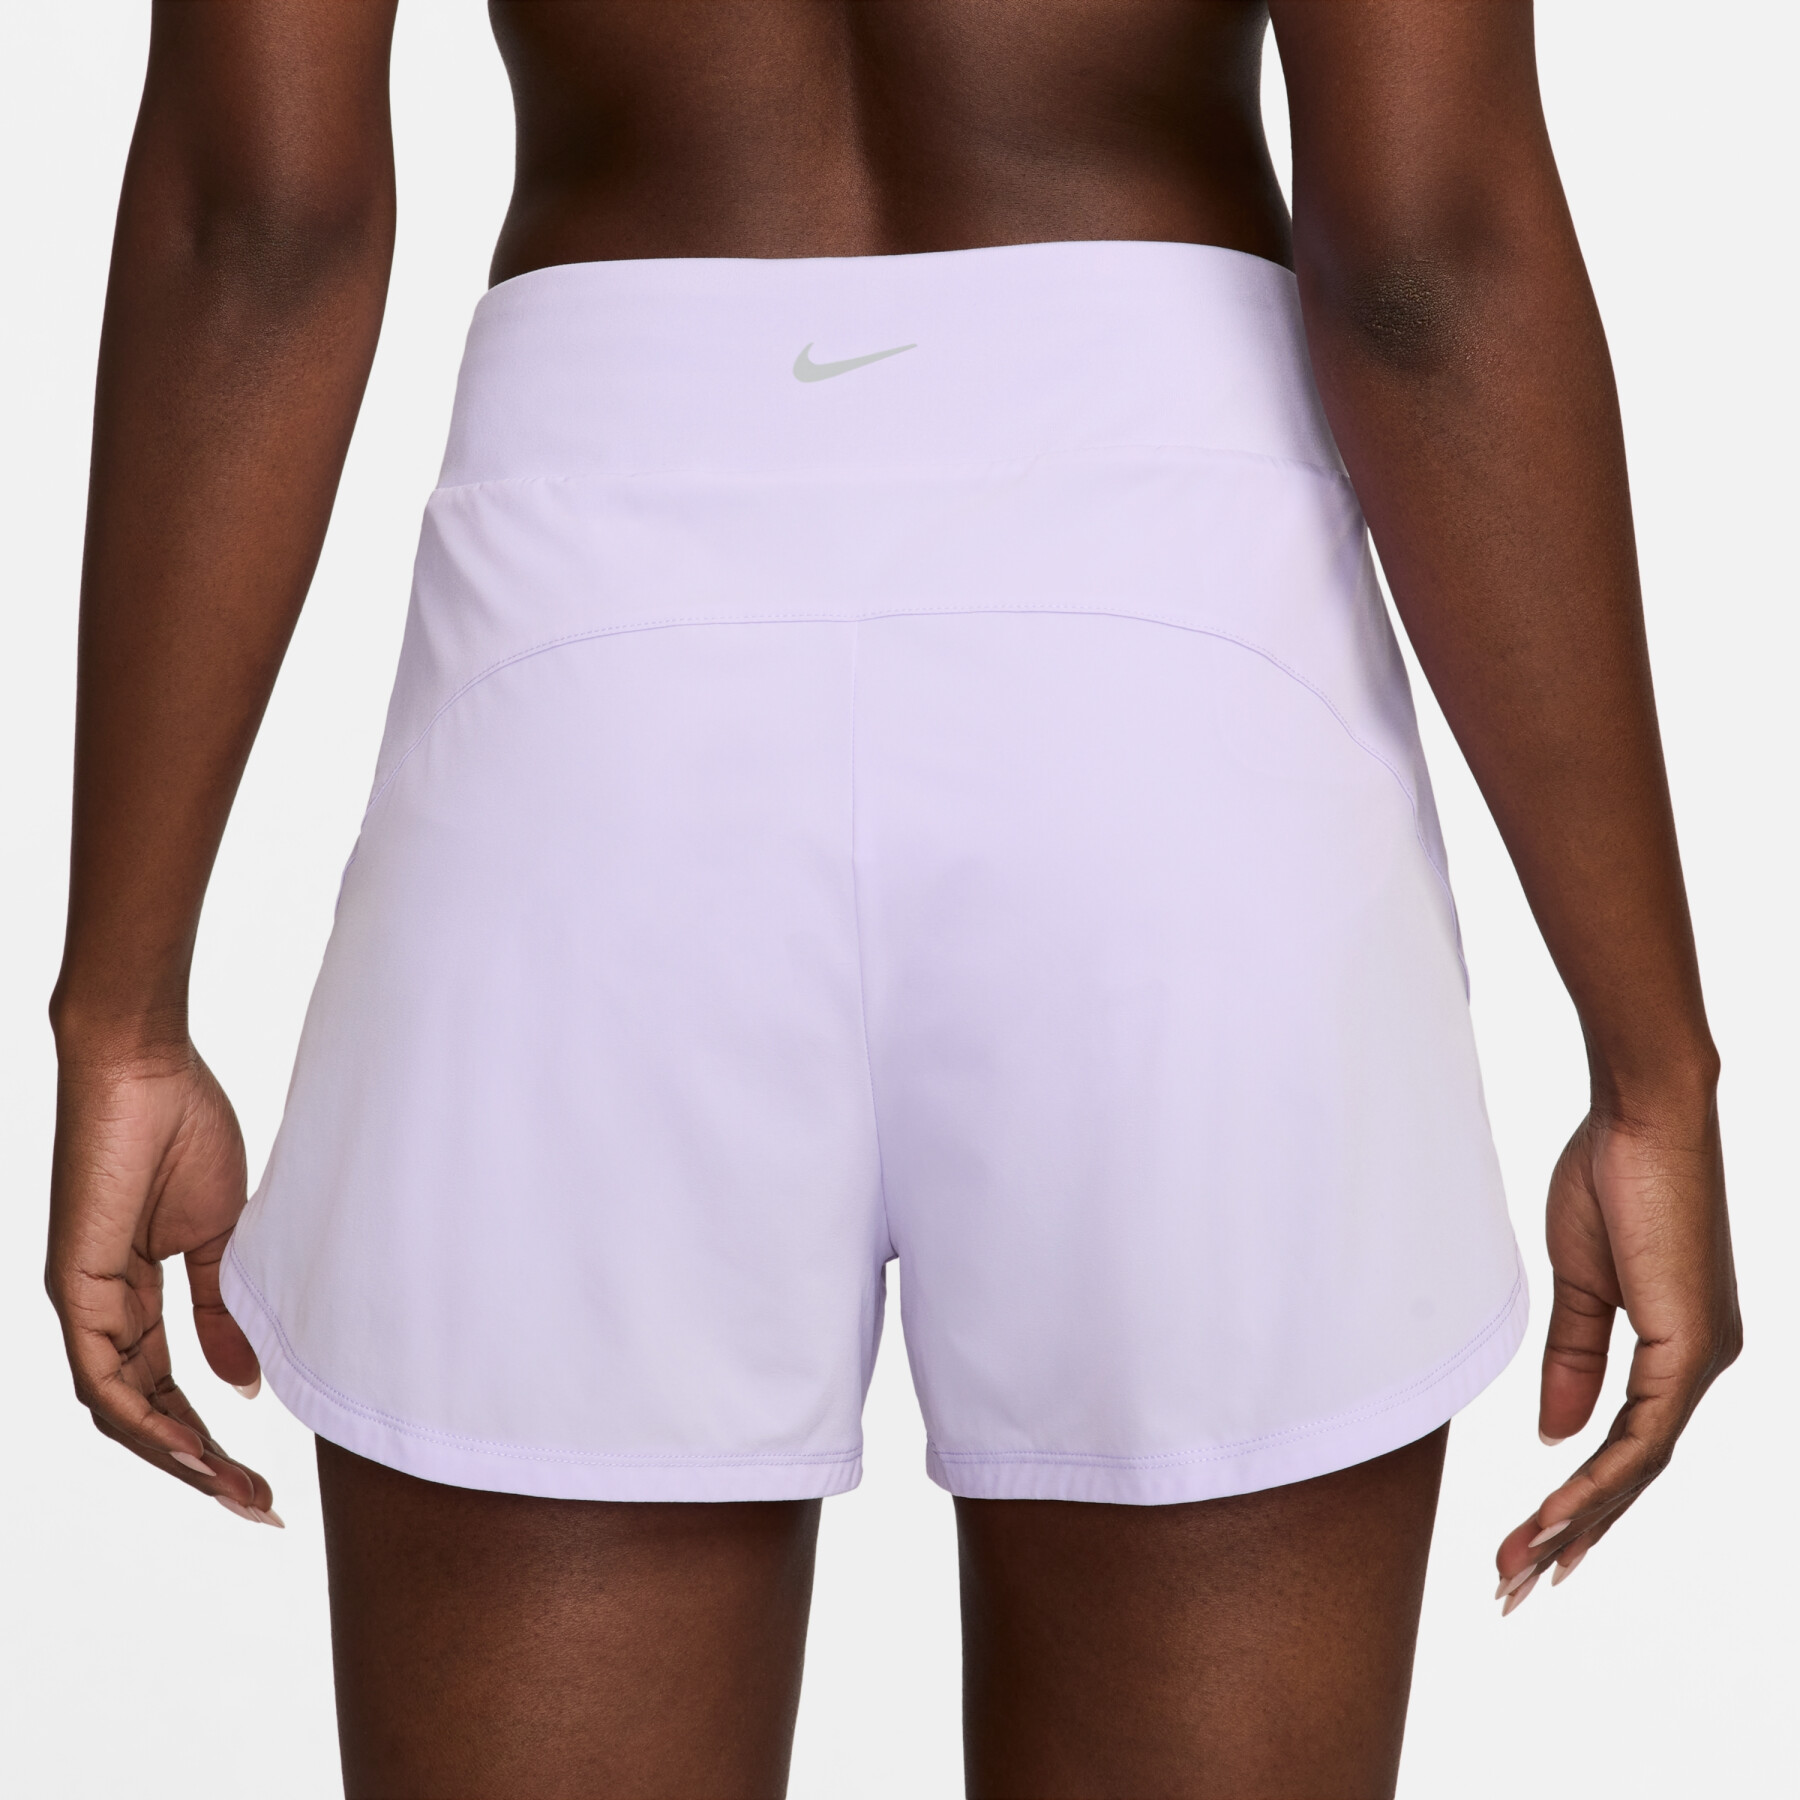 Pantalón corto femenino de tiro medio con calzoncillo integrado Nike Bliss Dri-FIT